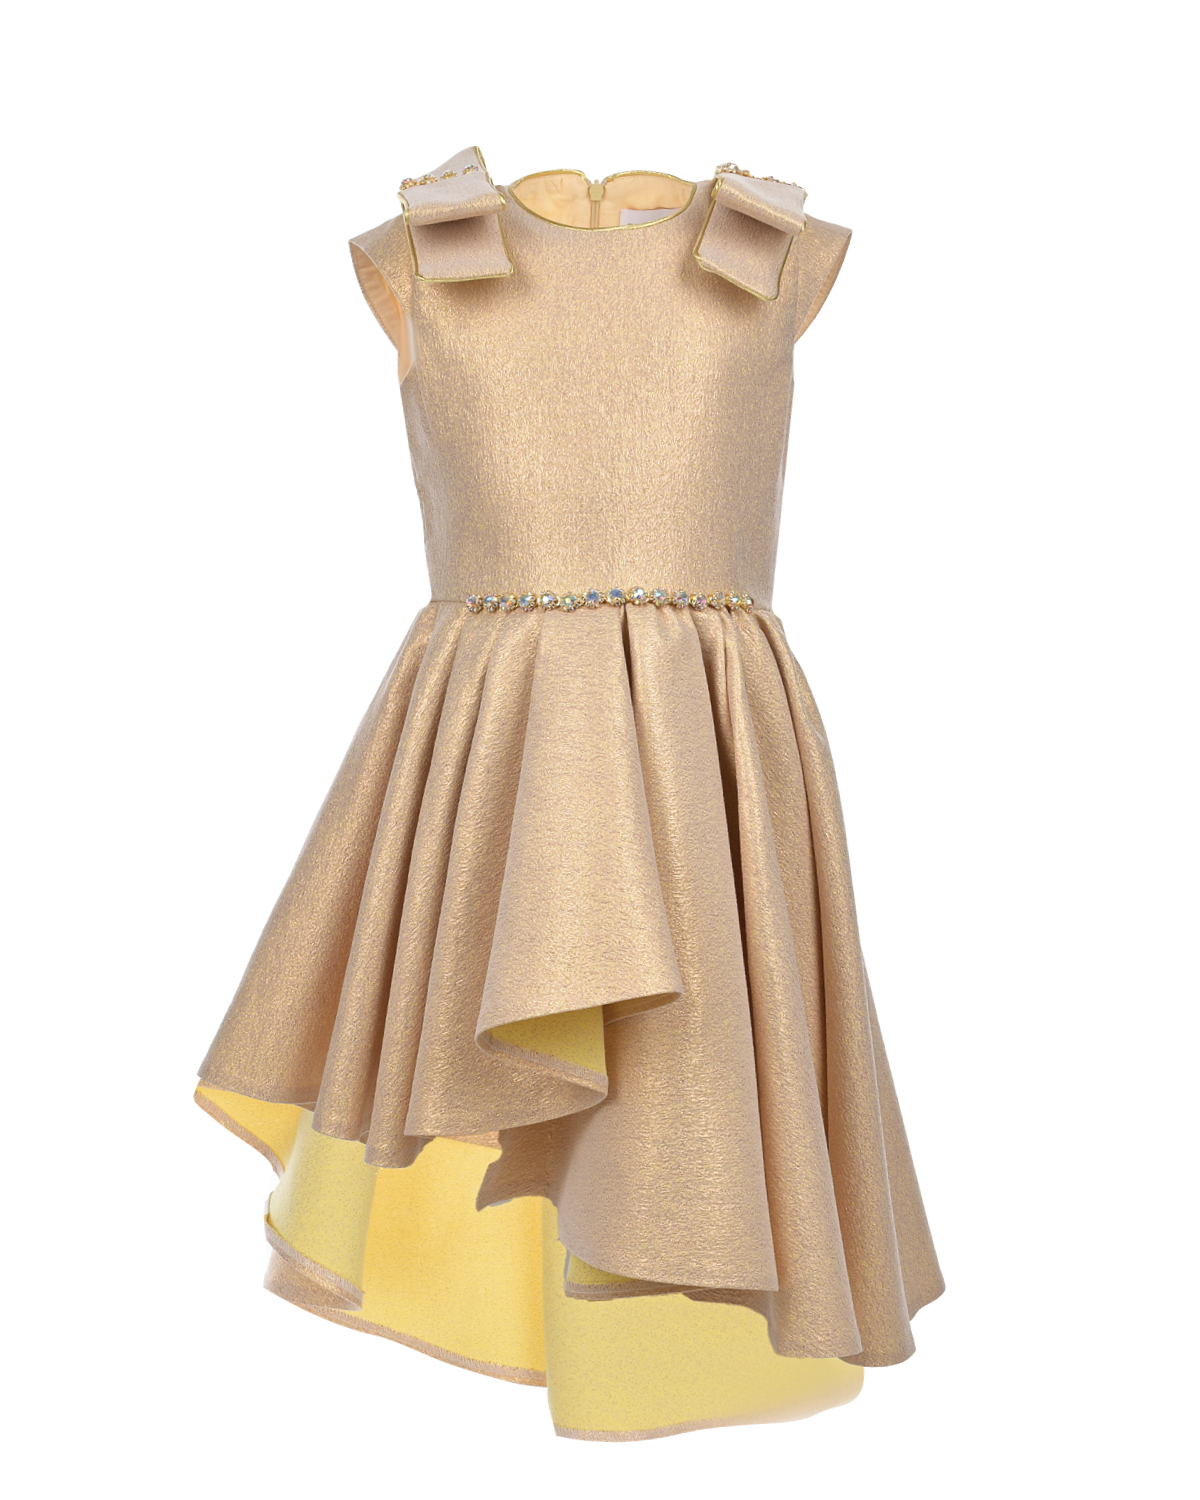 Платье золотого цвета с асимметричной юбкой Eirene, размер 128